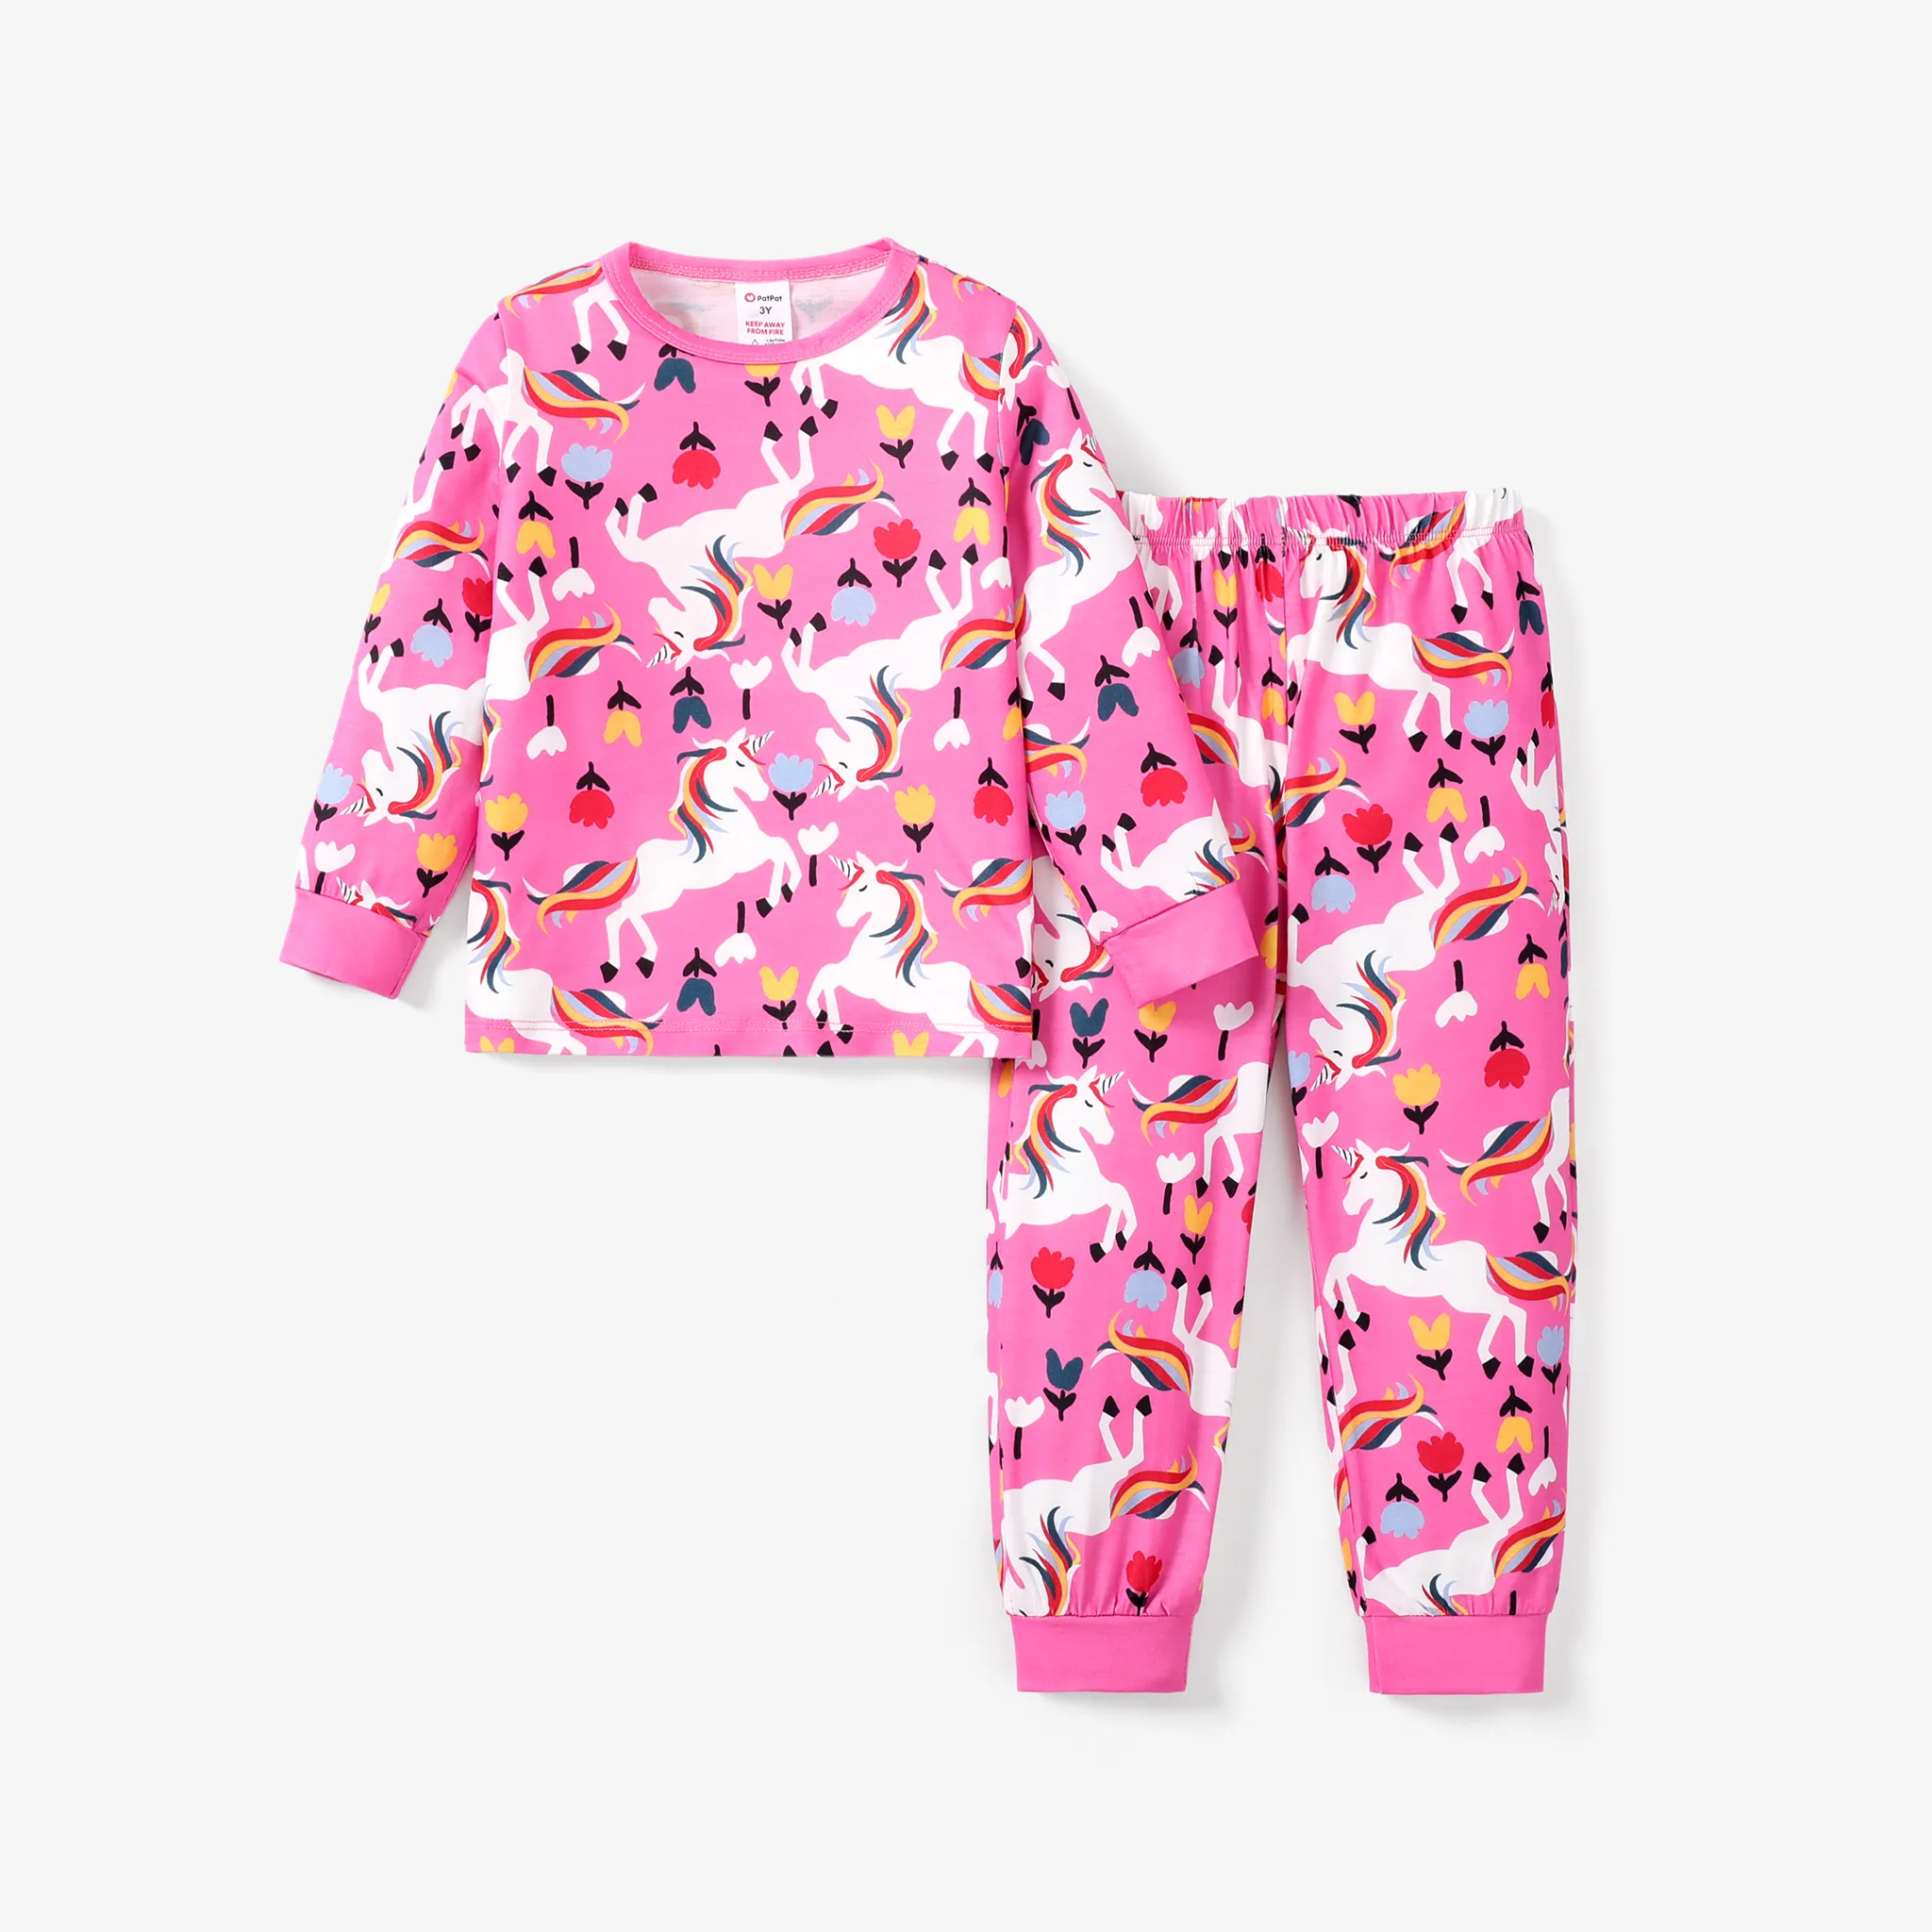 2件幼兒/兒童女孩獨角獸和花卉圖案粉紅色睡衣